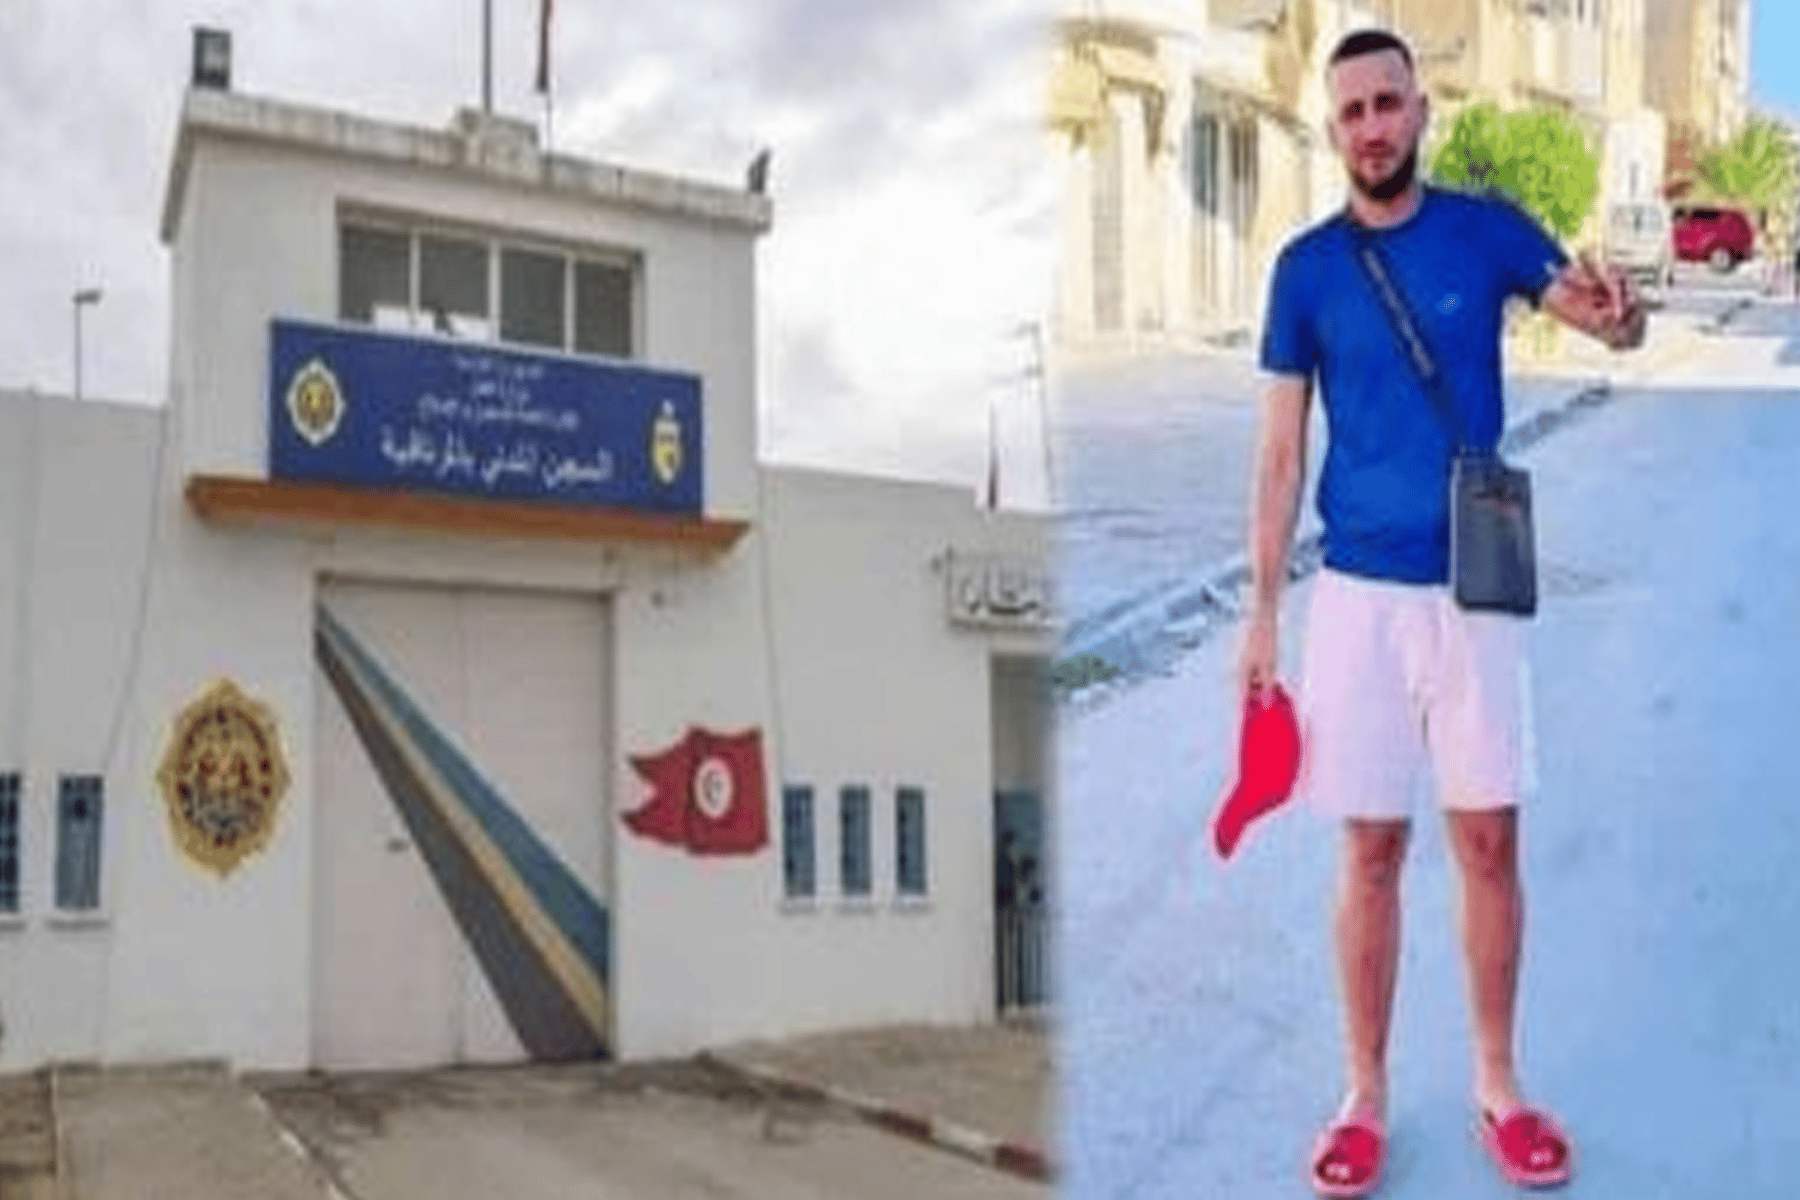 وفاة الشاب التونسي ربيع الشيحاوي داخل السجن alarabtrend.com